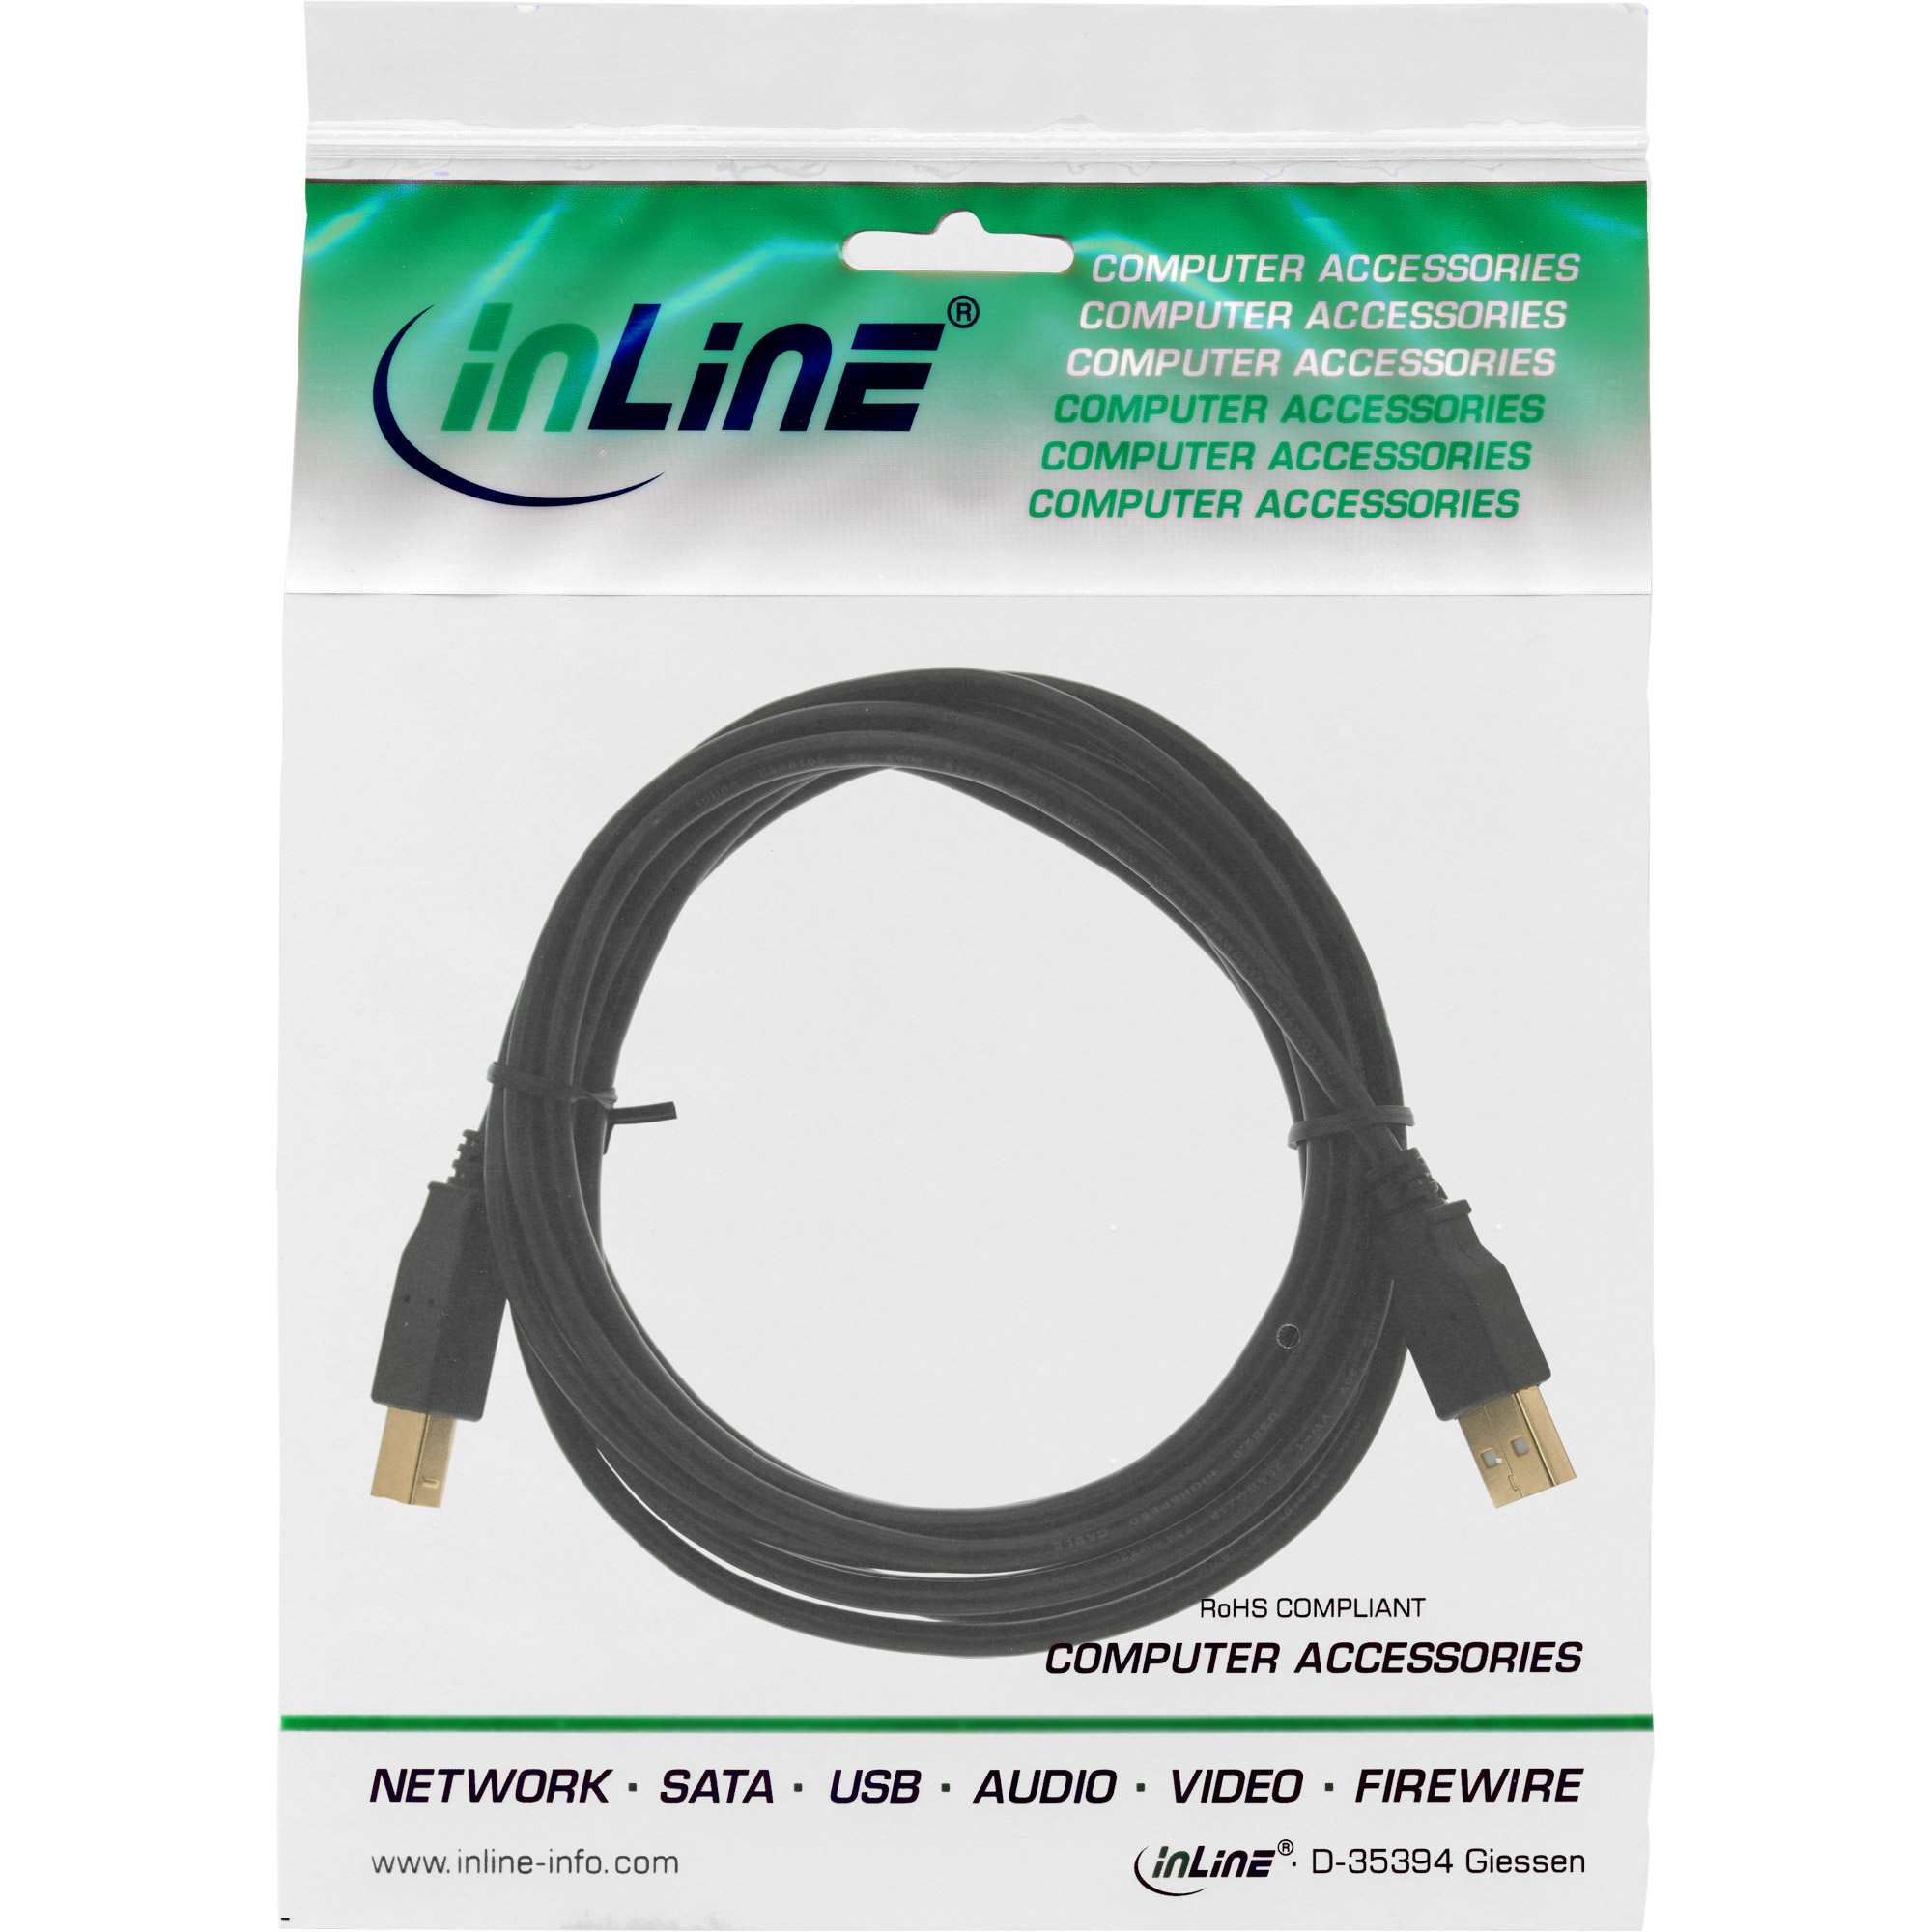 InLine 34555x USB 2.0 Kabel - A an B - 5 Meter - auch für Samsung Flip als Ersatzkabel